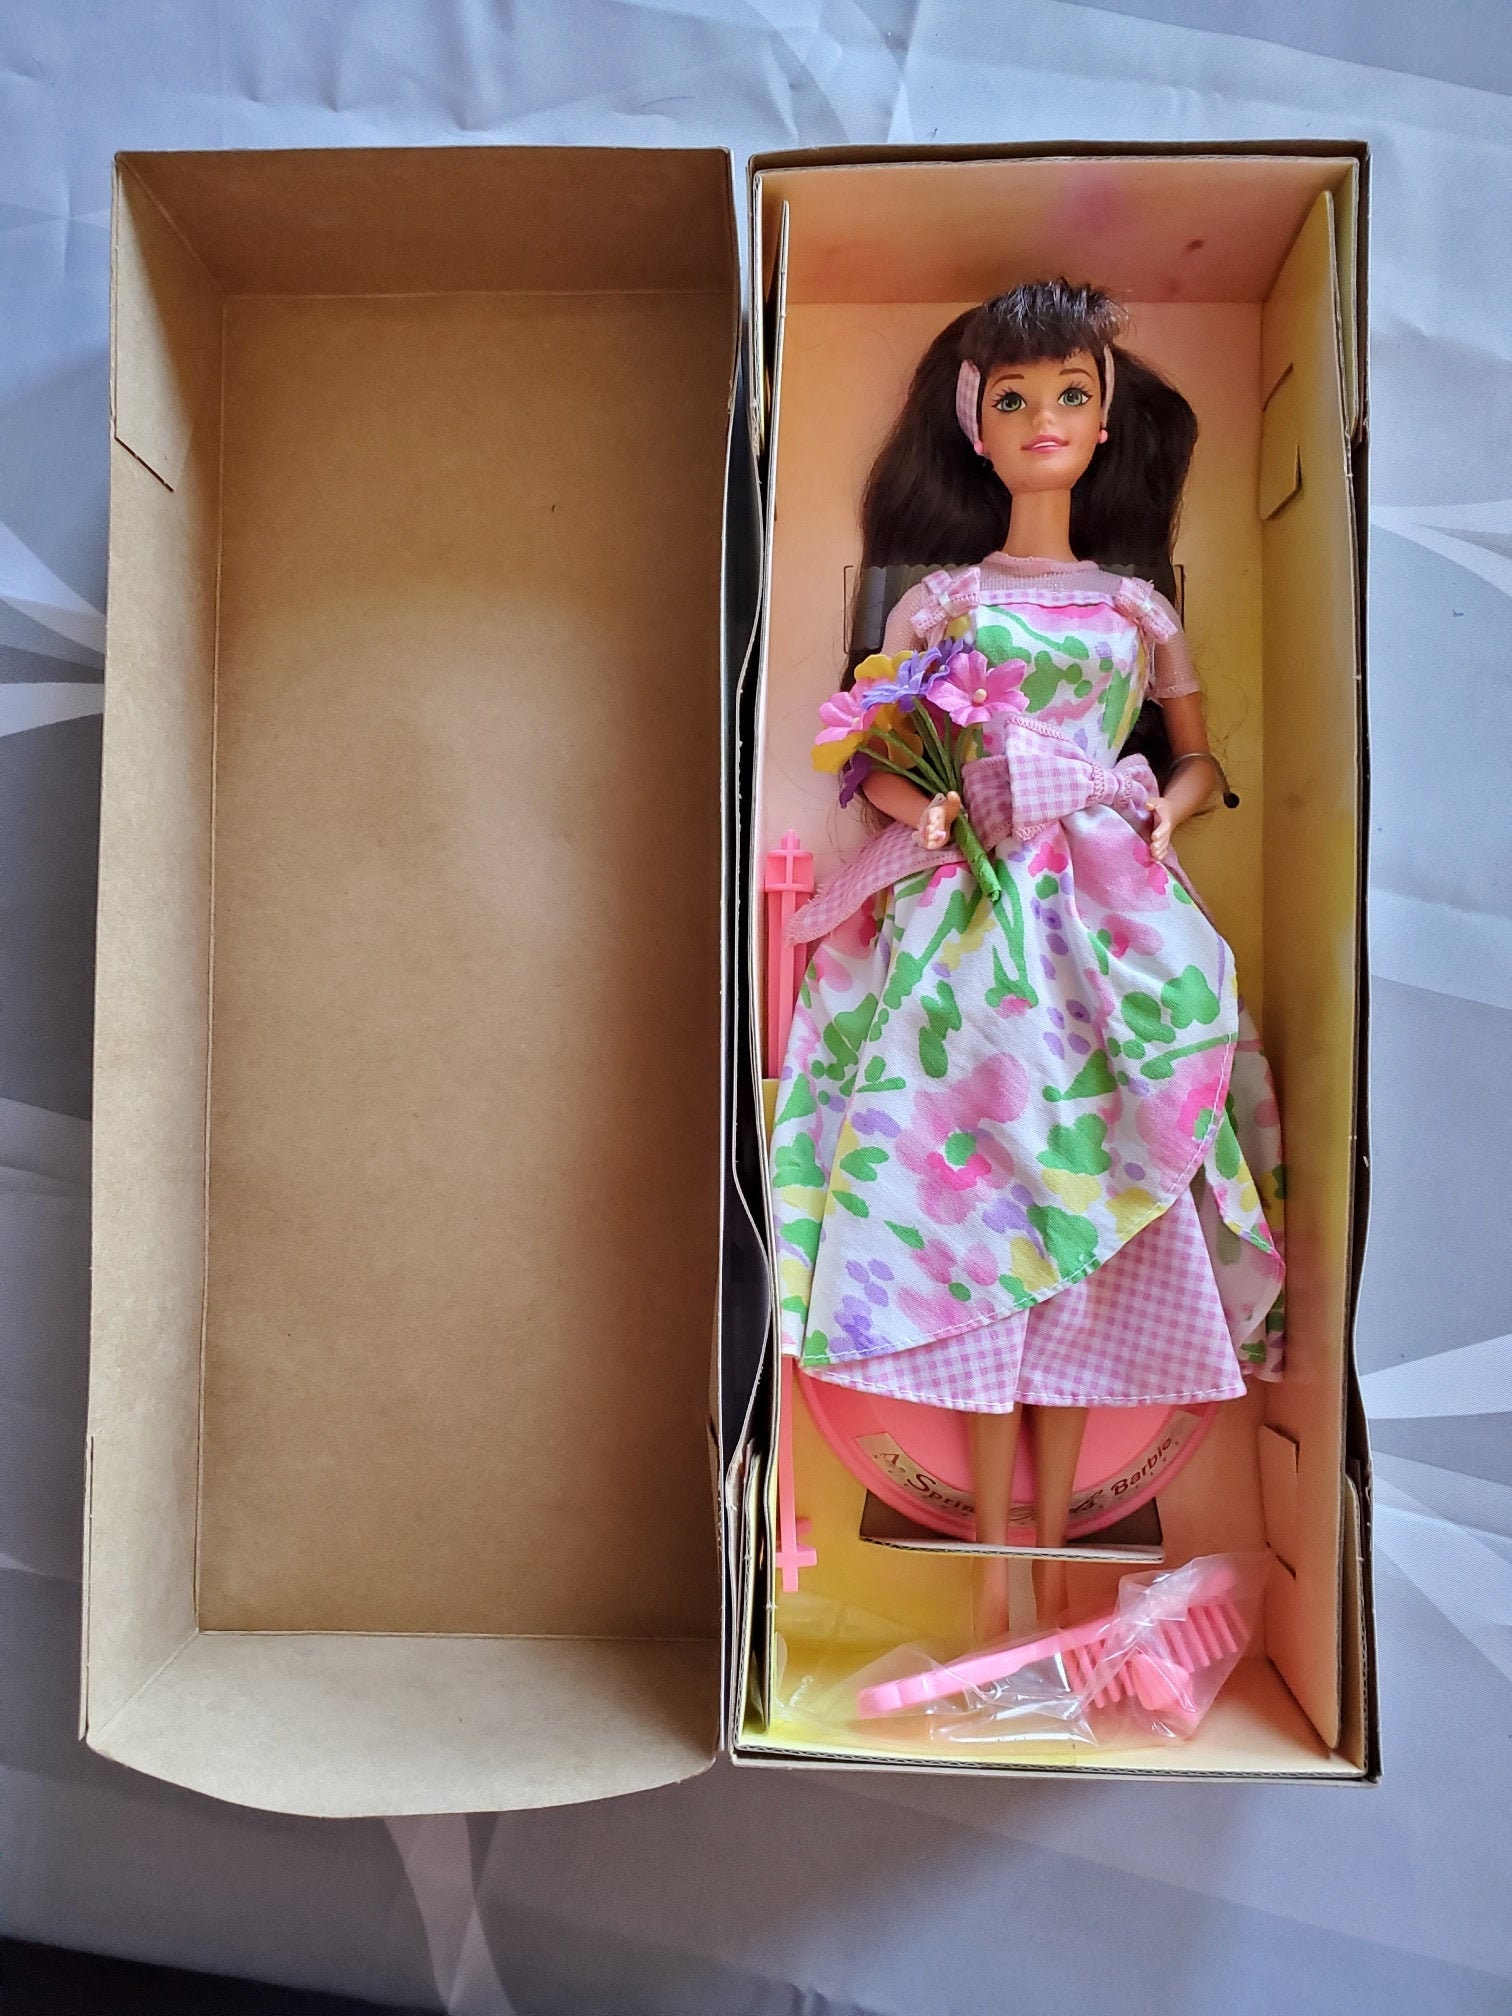 La Chambre de Barbie, coffret mobilier d'intérieur avec poupée Barbie (29,2  cm, brune)